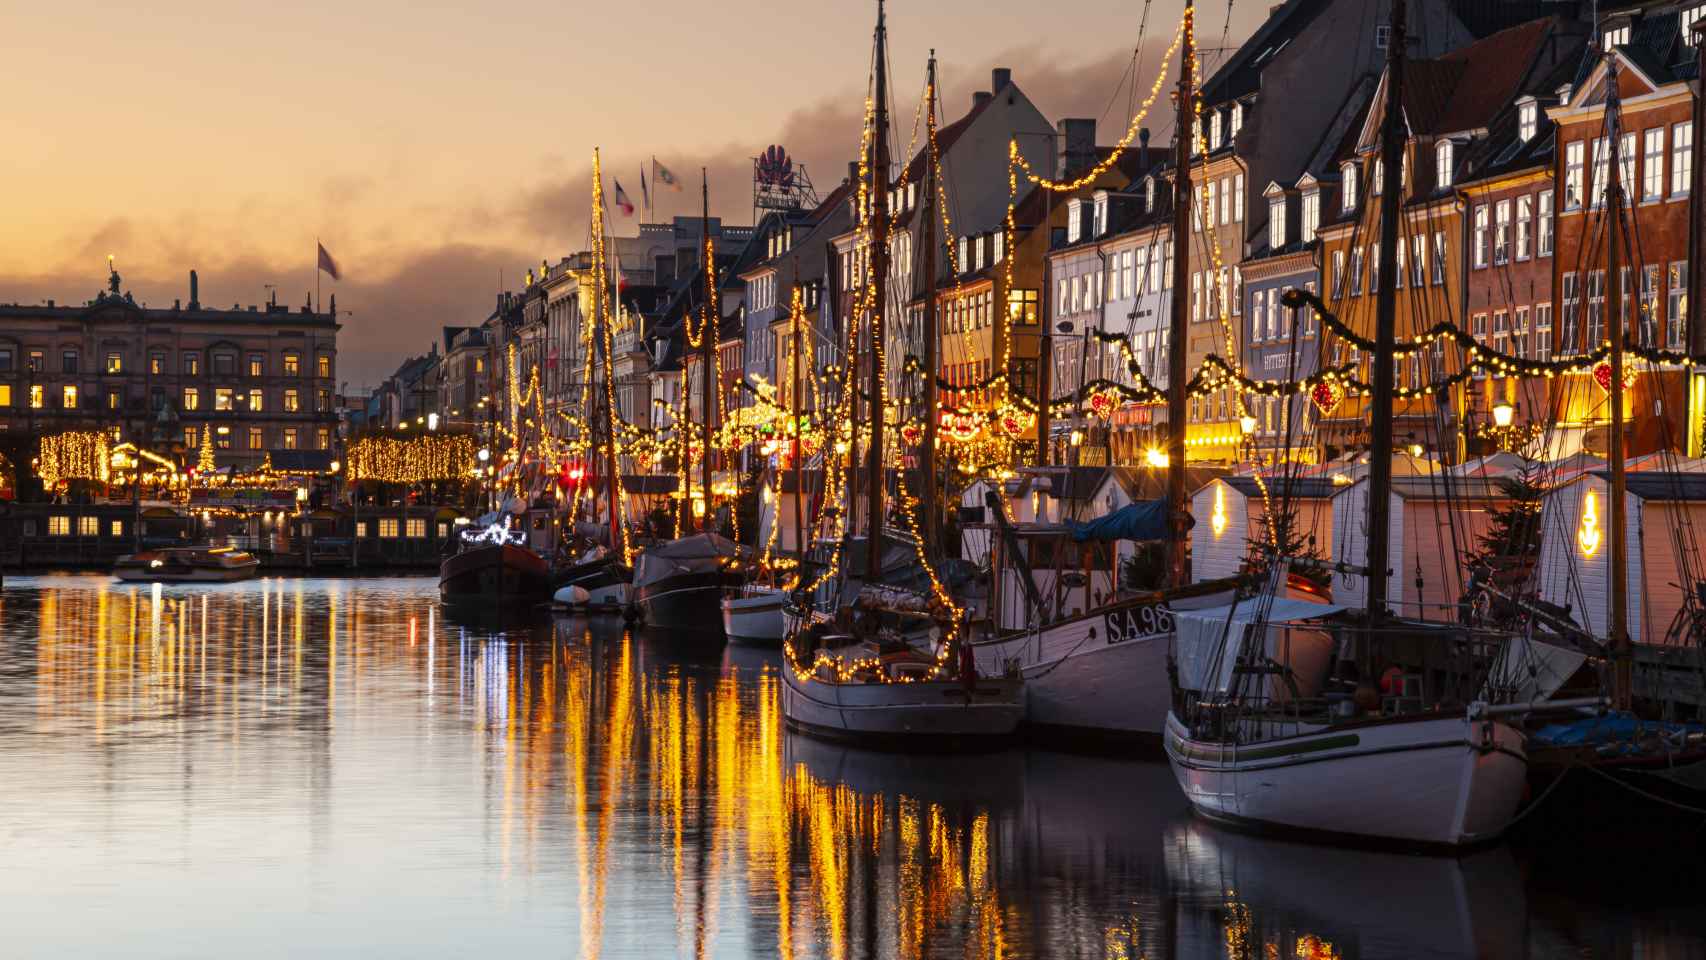 El puerto de Nyhavan, en Copenhague, adornado con luces navideñas